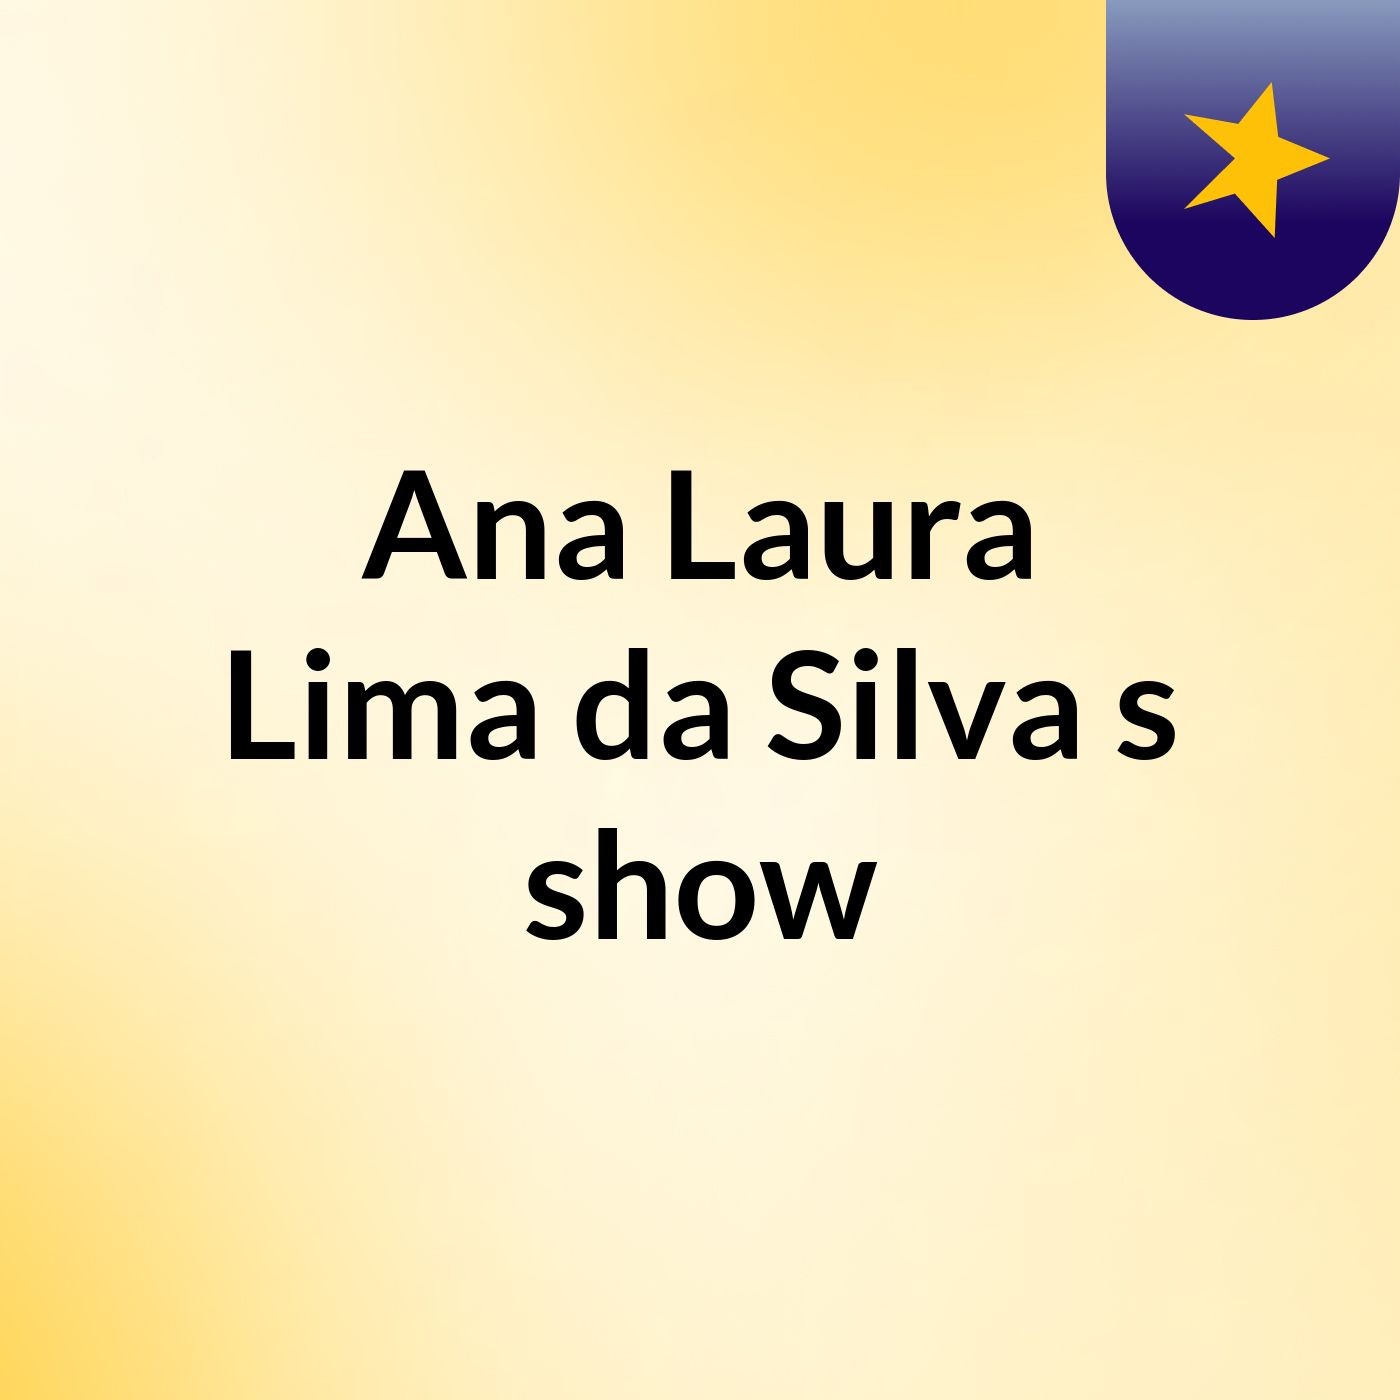 Ana Laura Lima da Silva's show